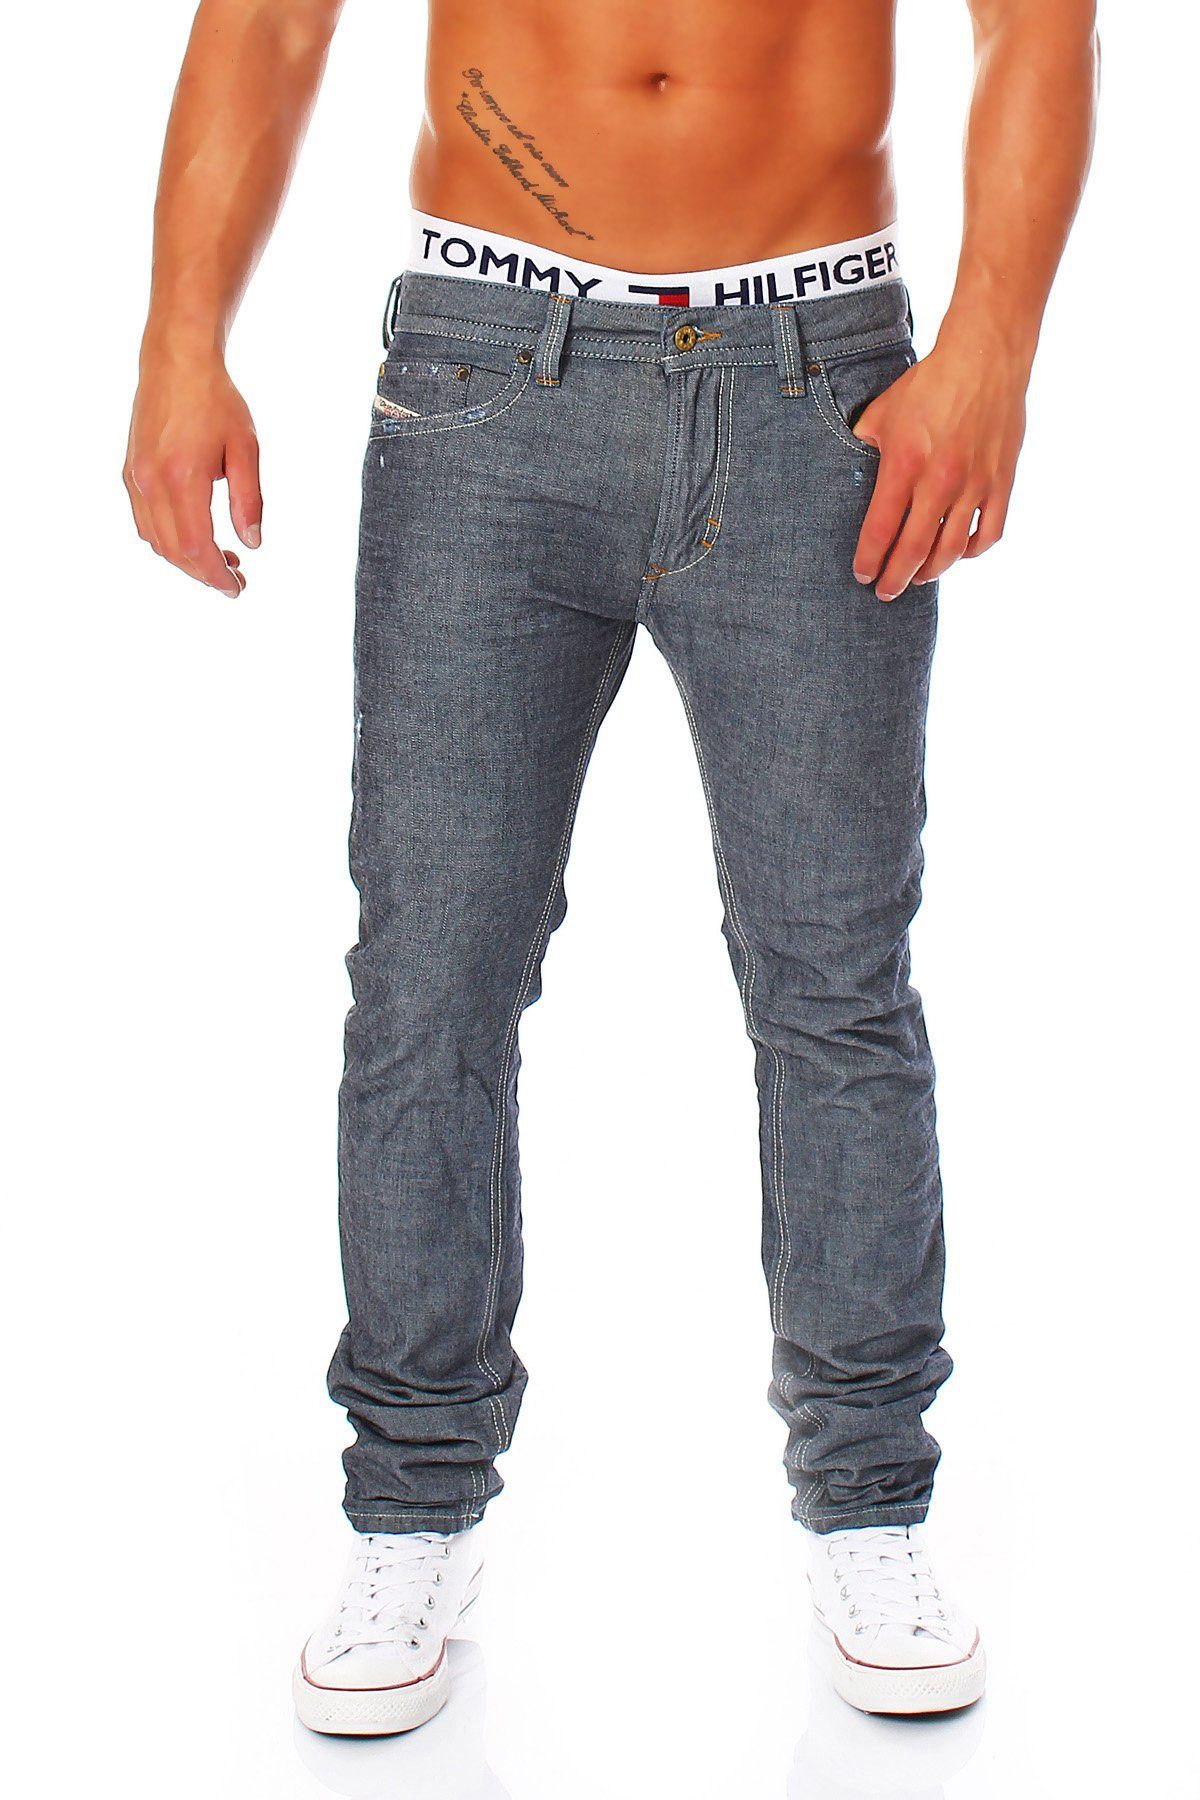 Slim-fit-Jeans Röhrenjeans, Style, Thavar Diesel 0809D Blau-Grau, Pocket 5 Used-Look Dezenter Herren